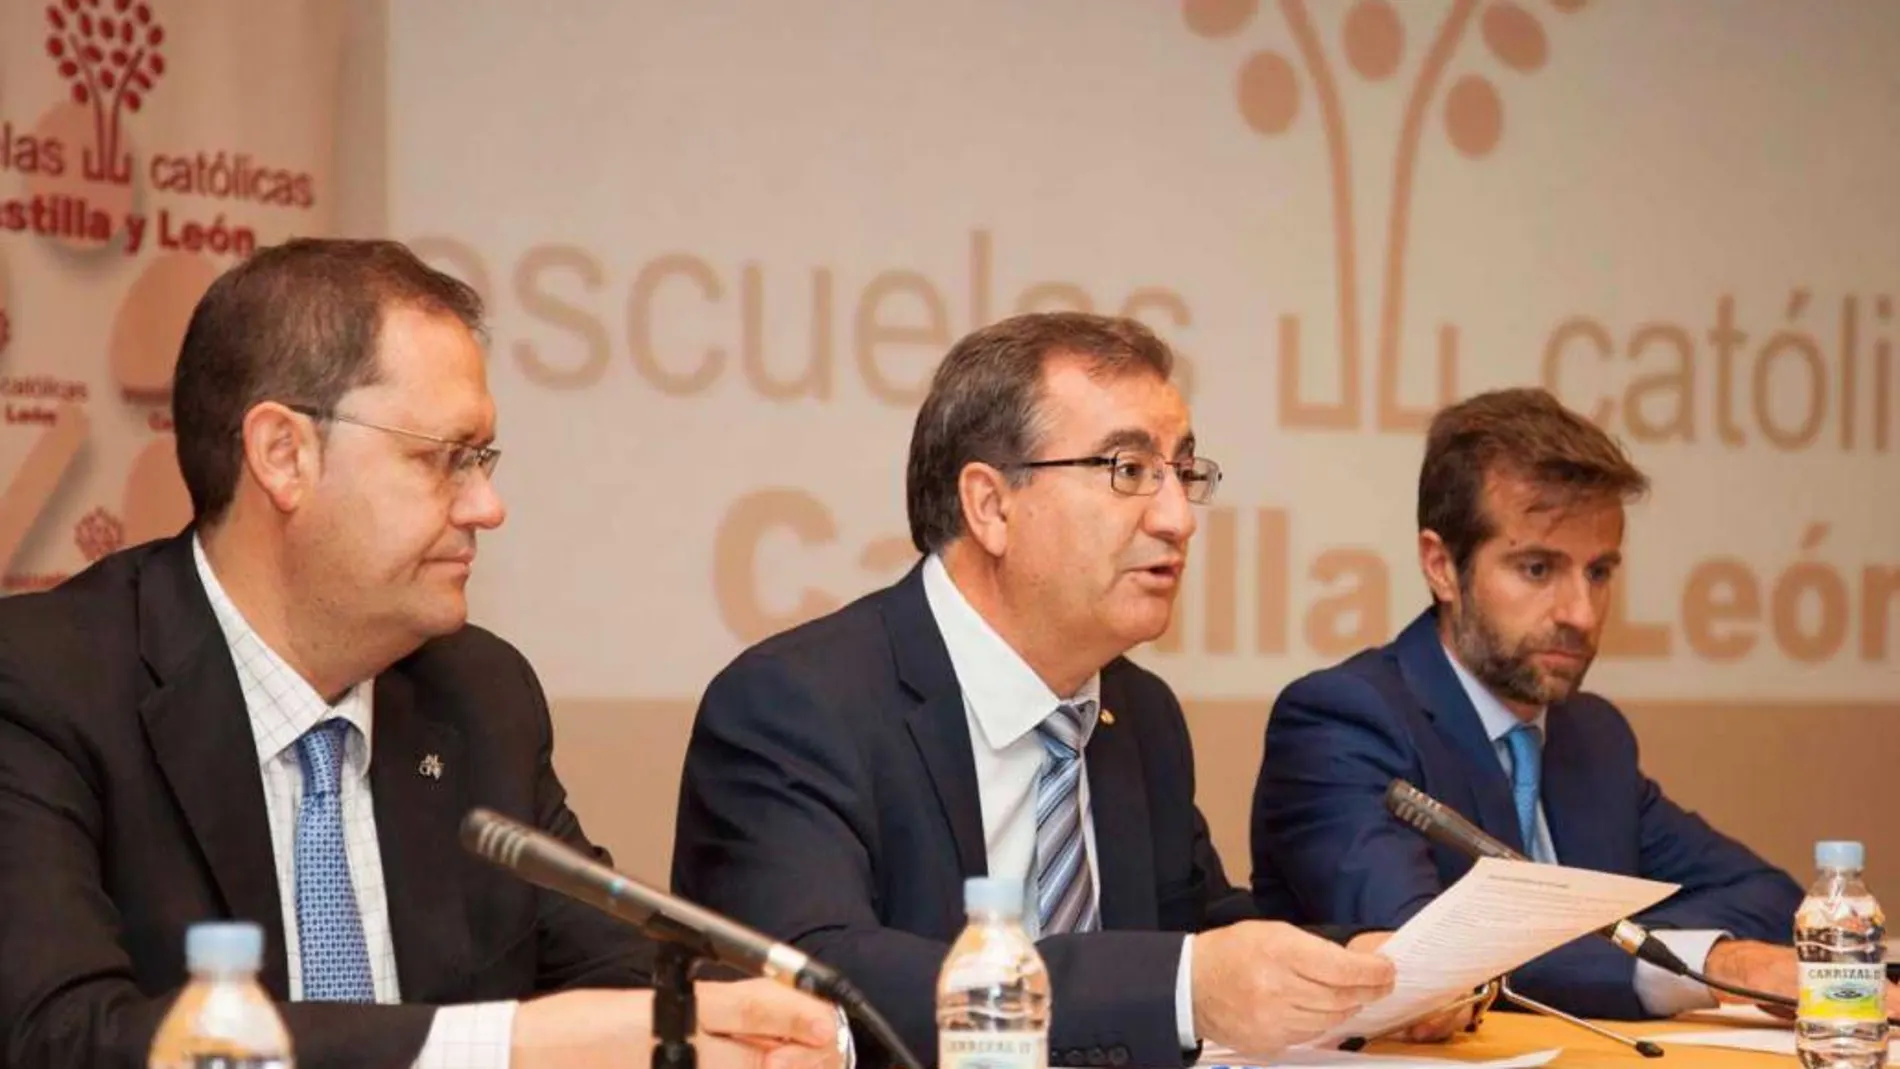 Máximo Blanco, presidente de Escuelas Católicas, interviene en la asamblea